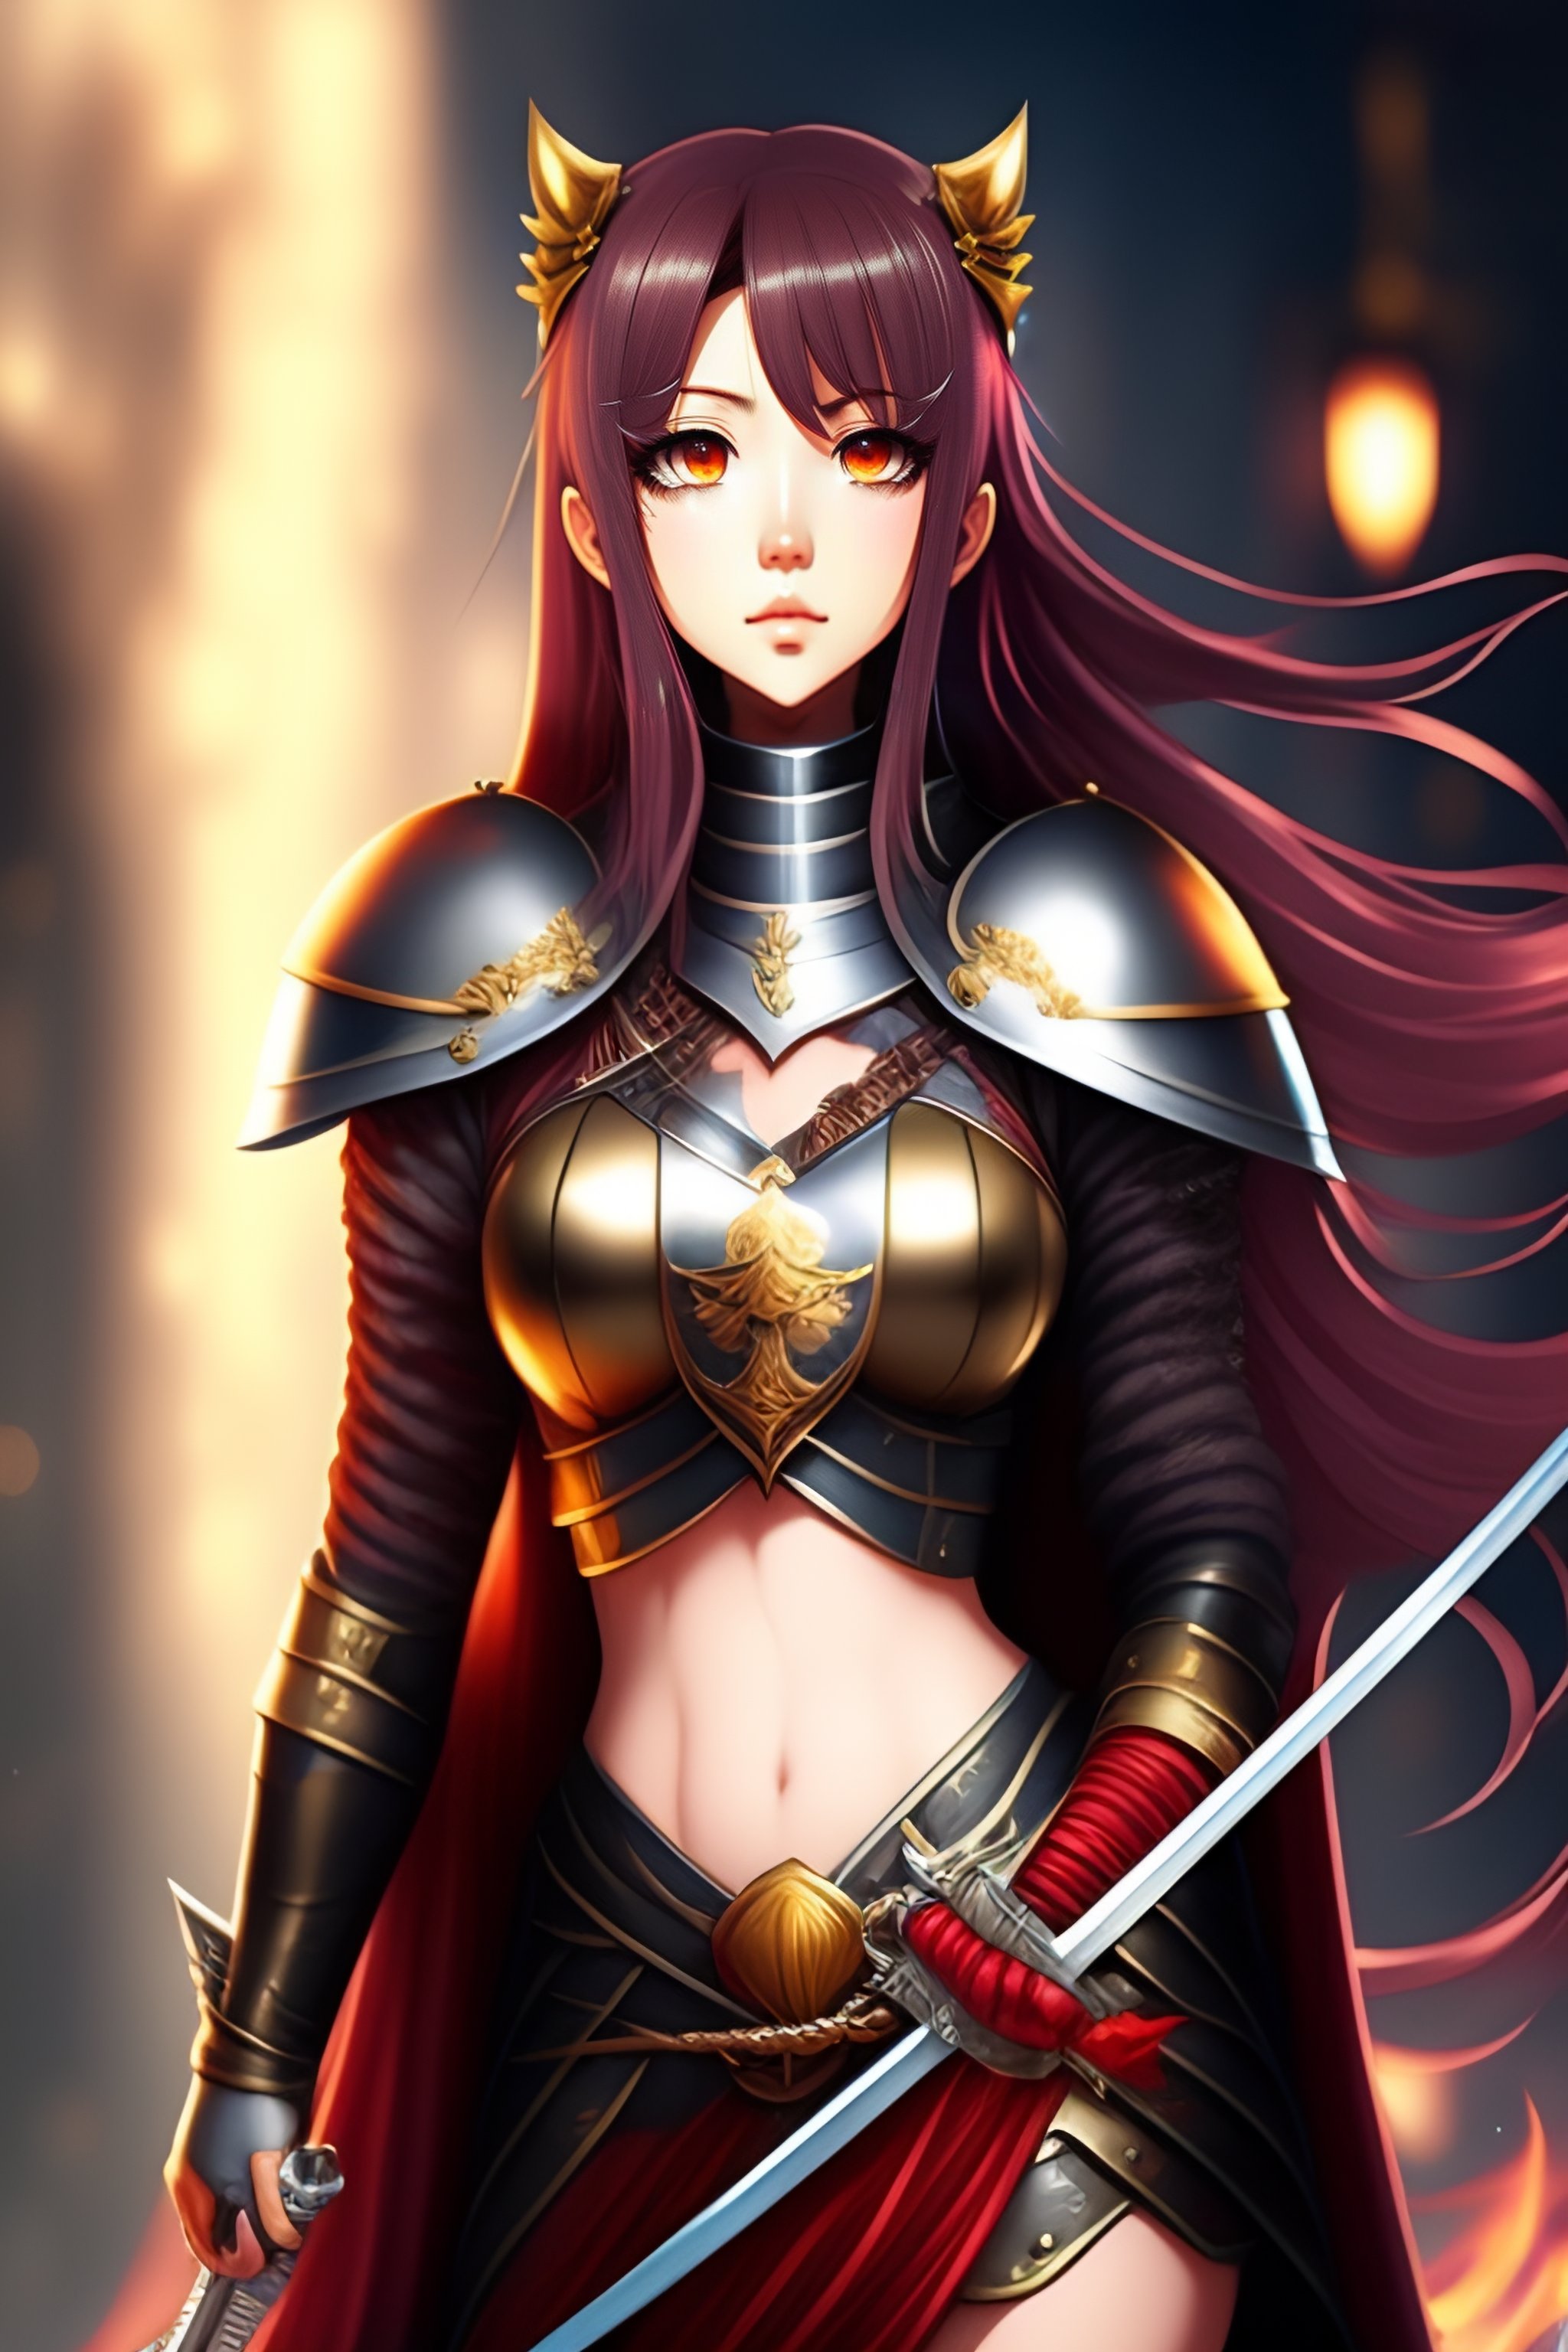 Lexica - Anime female knight full body holding sword